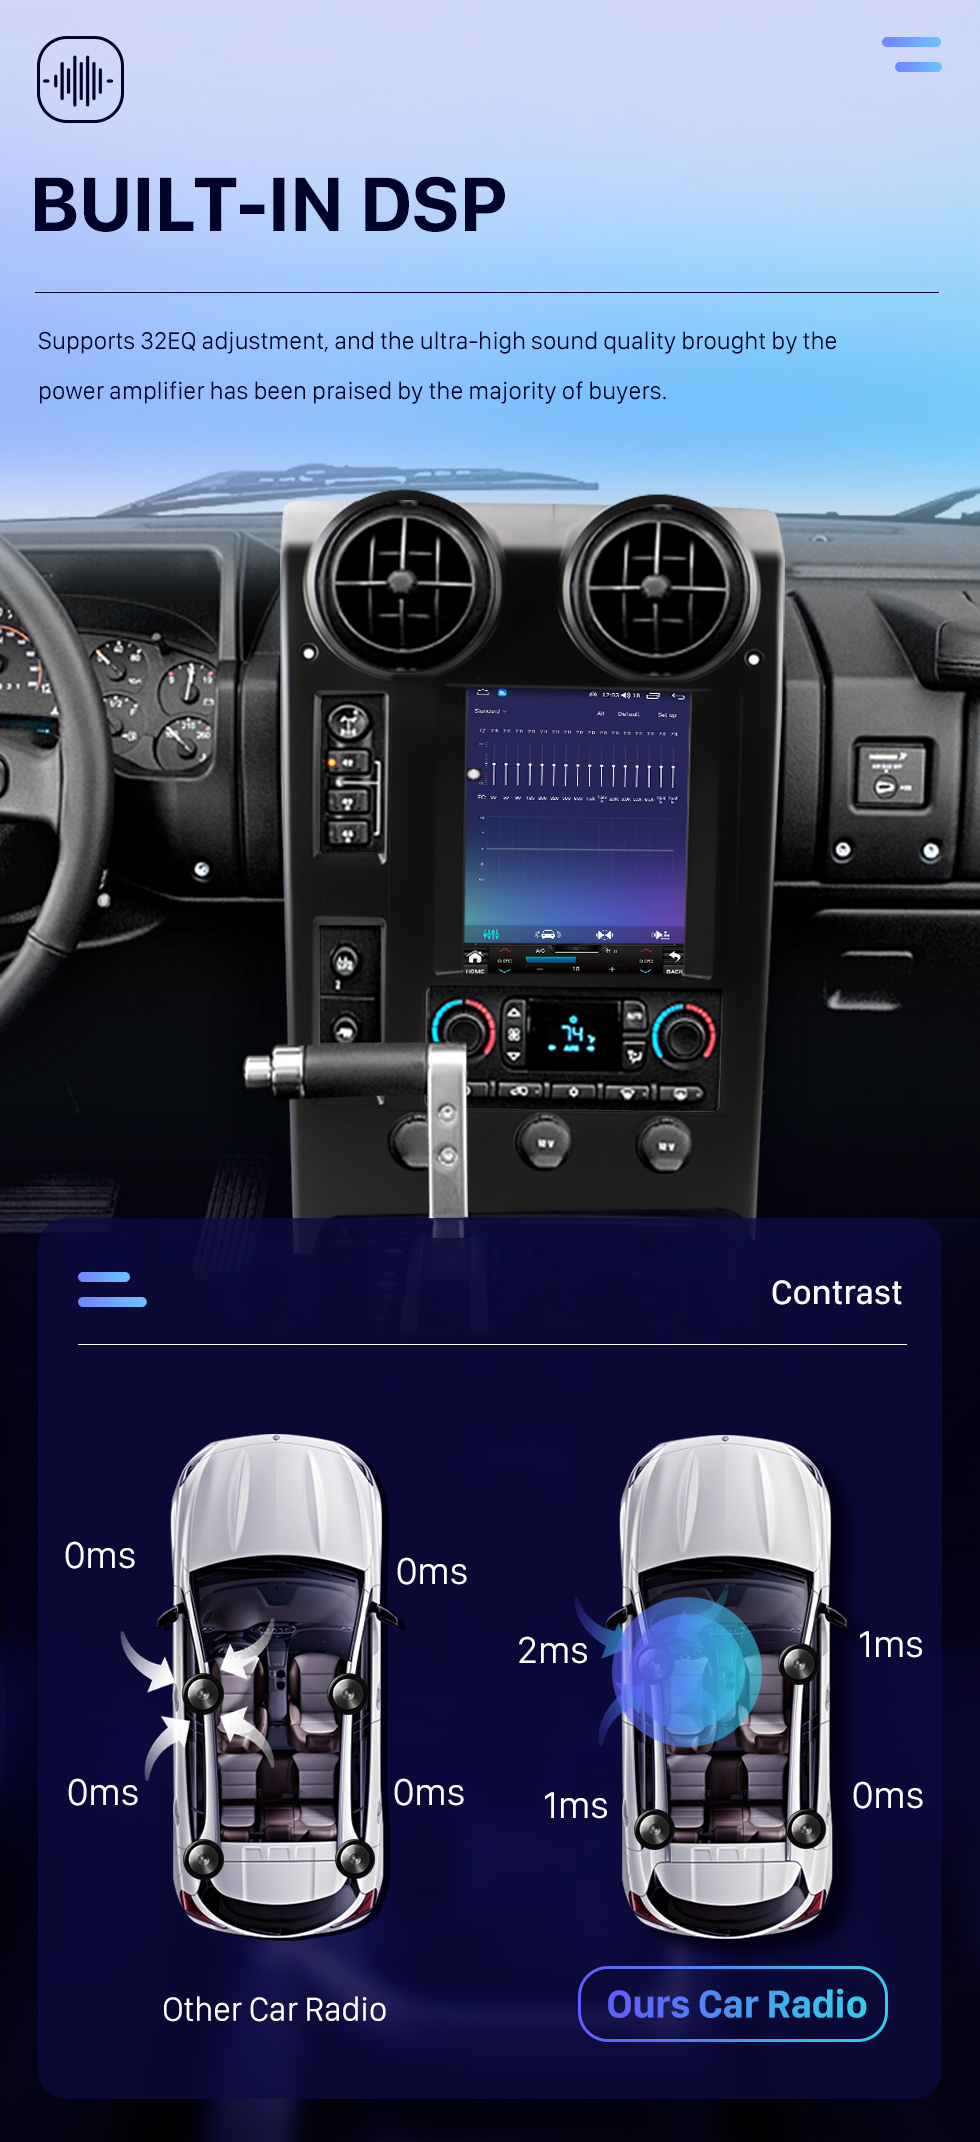 Seicane OEM 9,7 polegadas Android 10.0 para 2004-2007 Hummer H2 Radio GPS Navigation System Com HD Touchscreen Bluetooth Carplay suporte OBD2 DVR TPMS